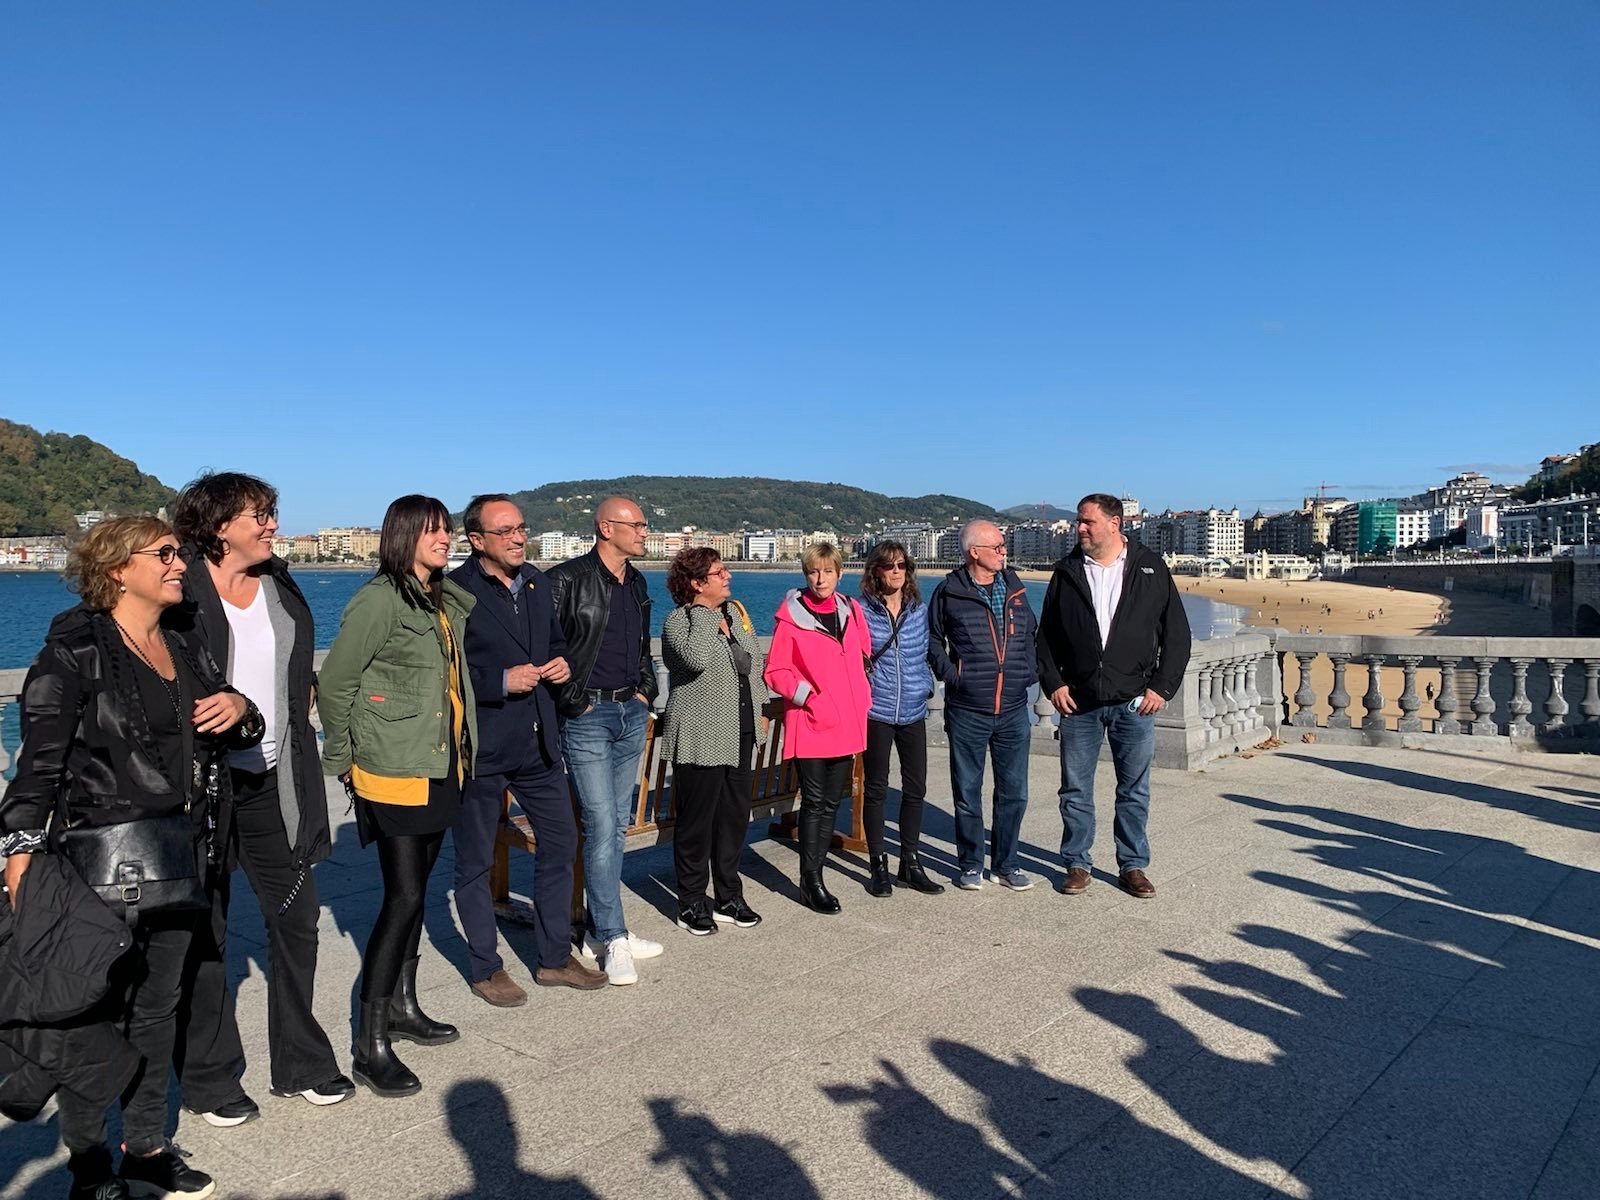 Els expresos catalans es manifesten en suport dels drets dels presos bascs a Euskadi